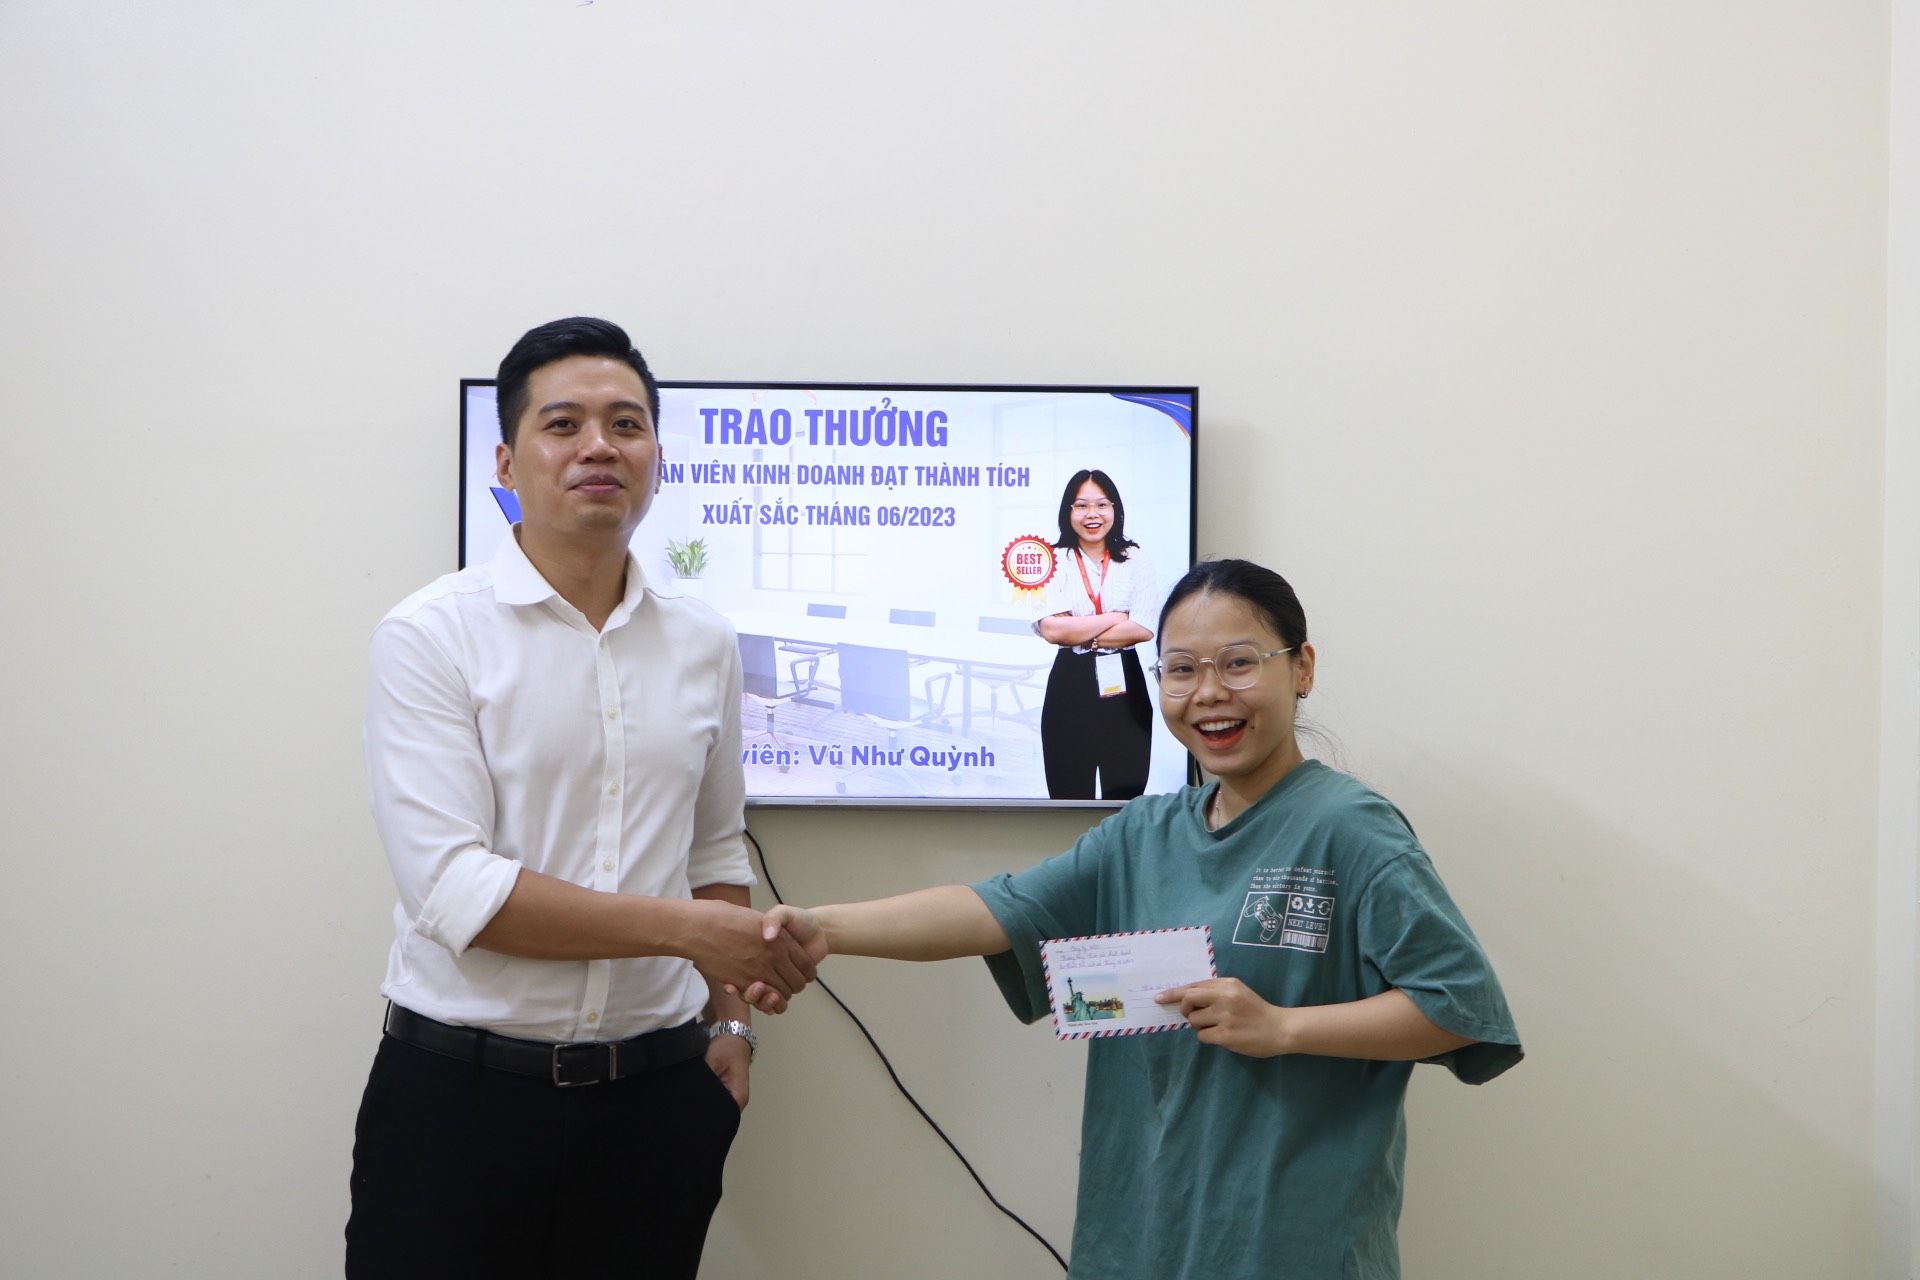 Ông Đồng Xuân Tú – Giám đốc Công ty Wico trao thưởng cho nhân viên kinh doanh xuất sắc